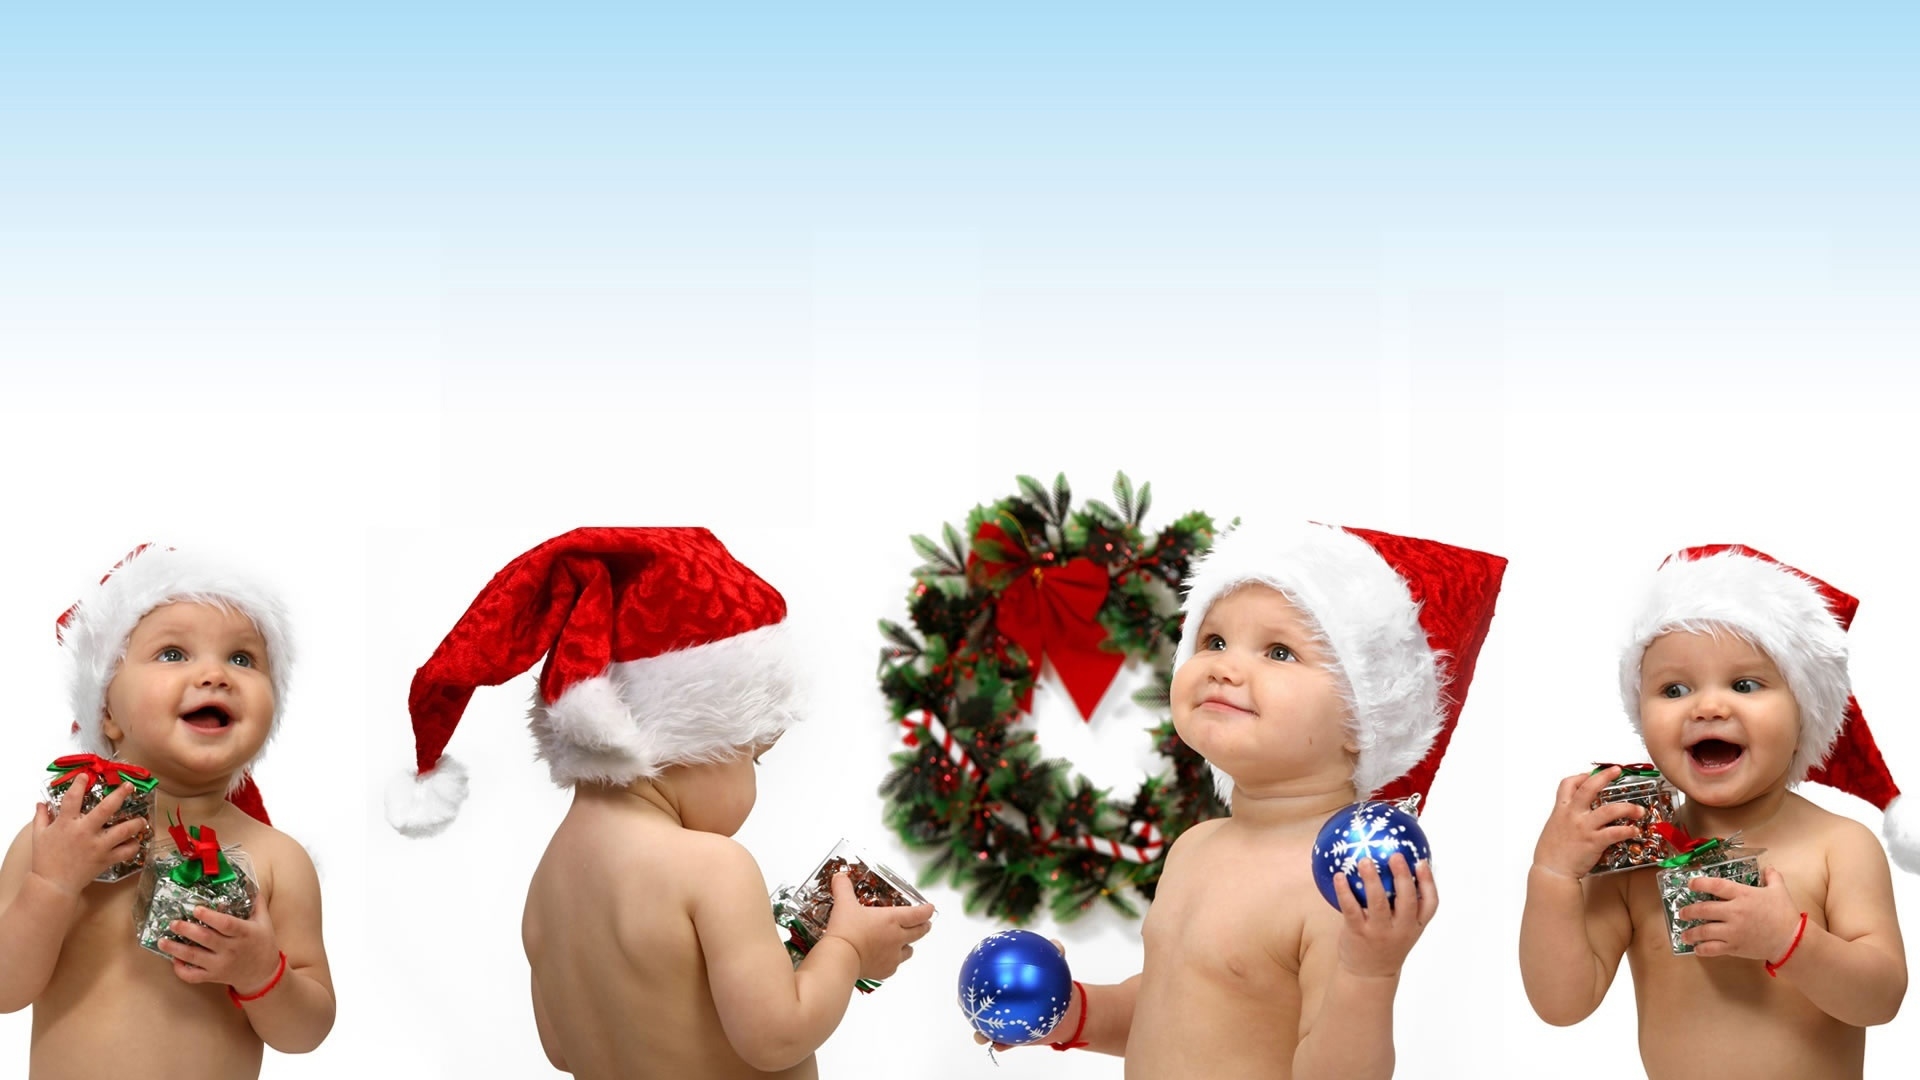 Christmas children for 1920 x 1080 HDTV 1080p resolution